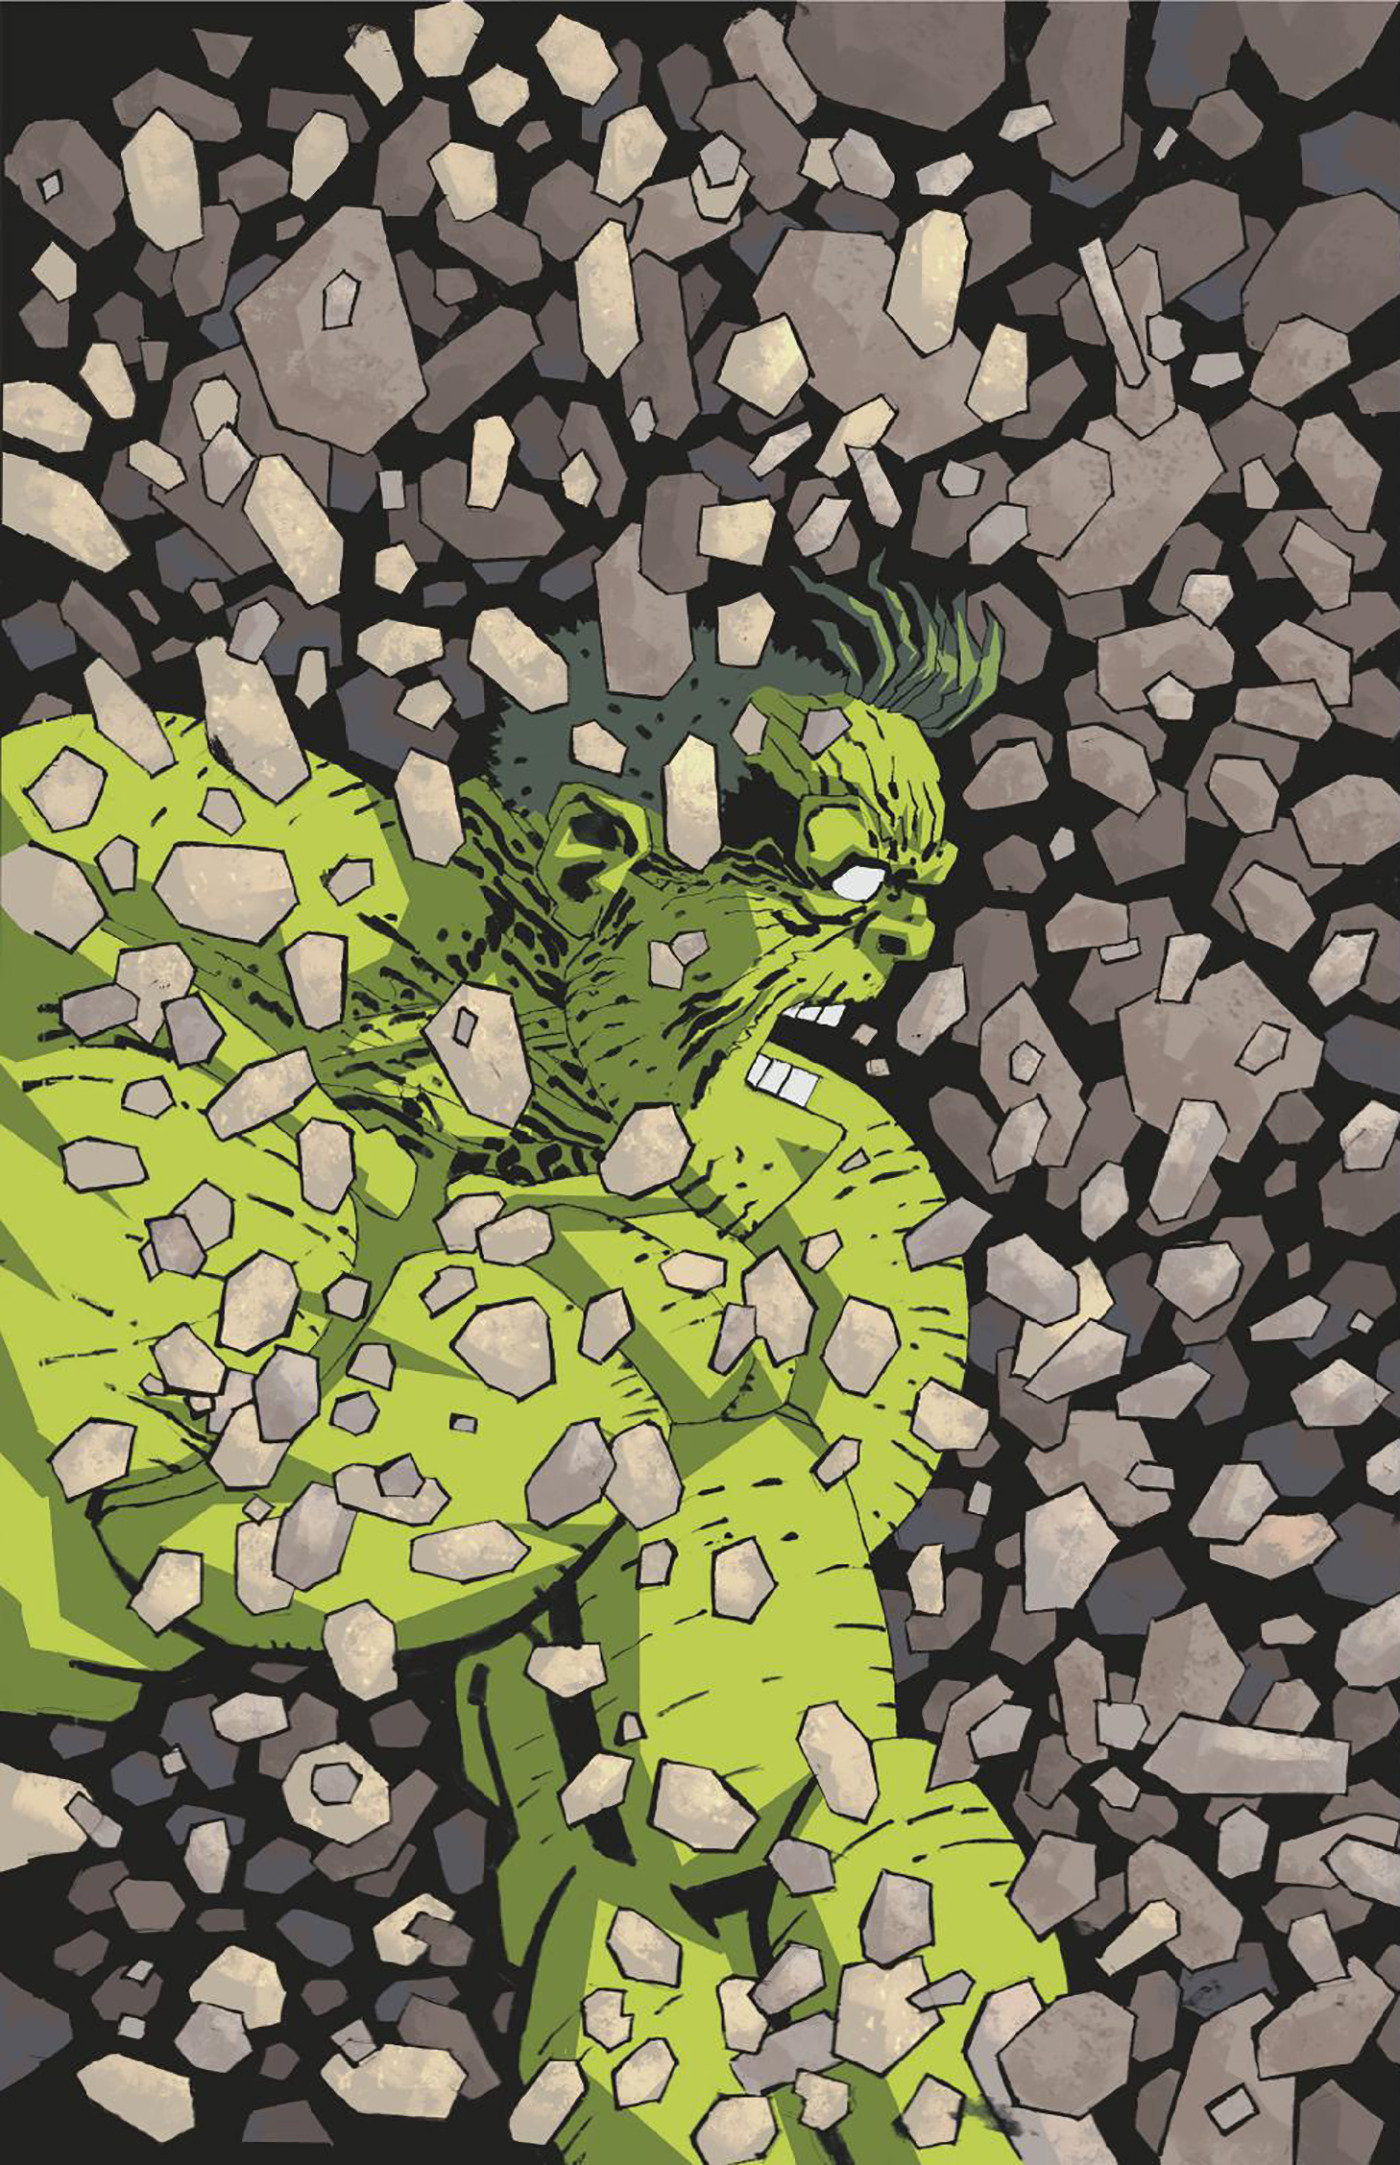 Incredible Hulk #3 1 for 50 Incentive Frank Miller Virgin Variant